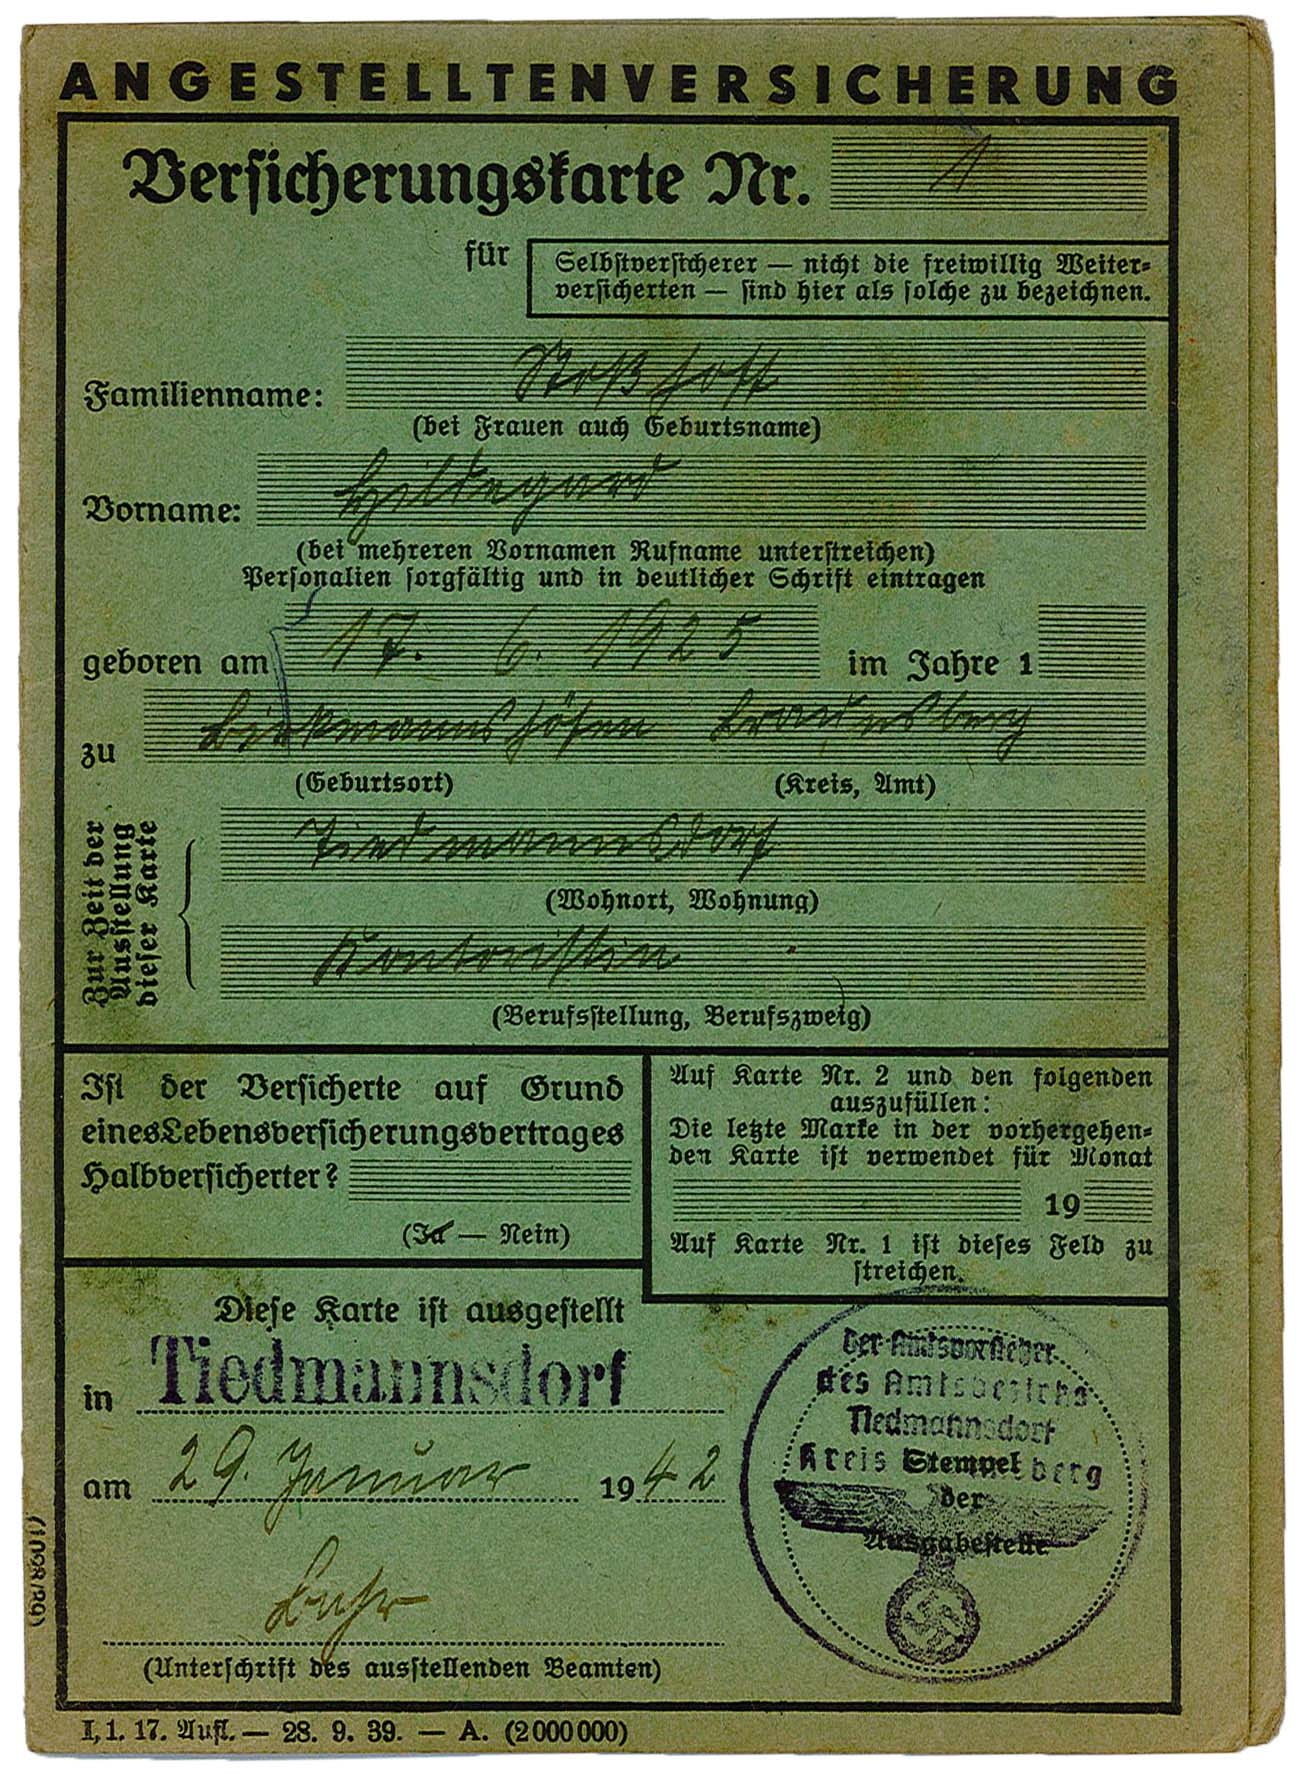 Versicherungskarte von Hildegard Stoshoff für die Angestelltenversicherung, 29.01.1942 (Museum Wolmirstedt RR-F)